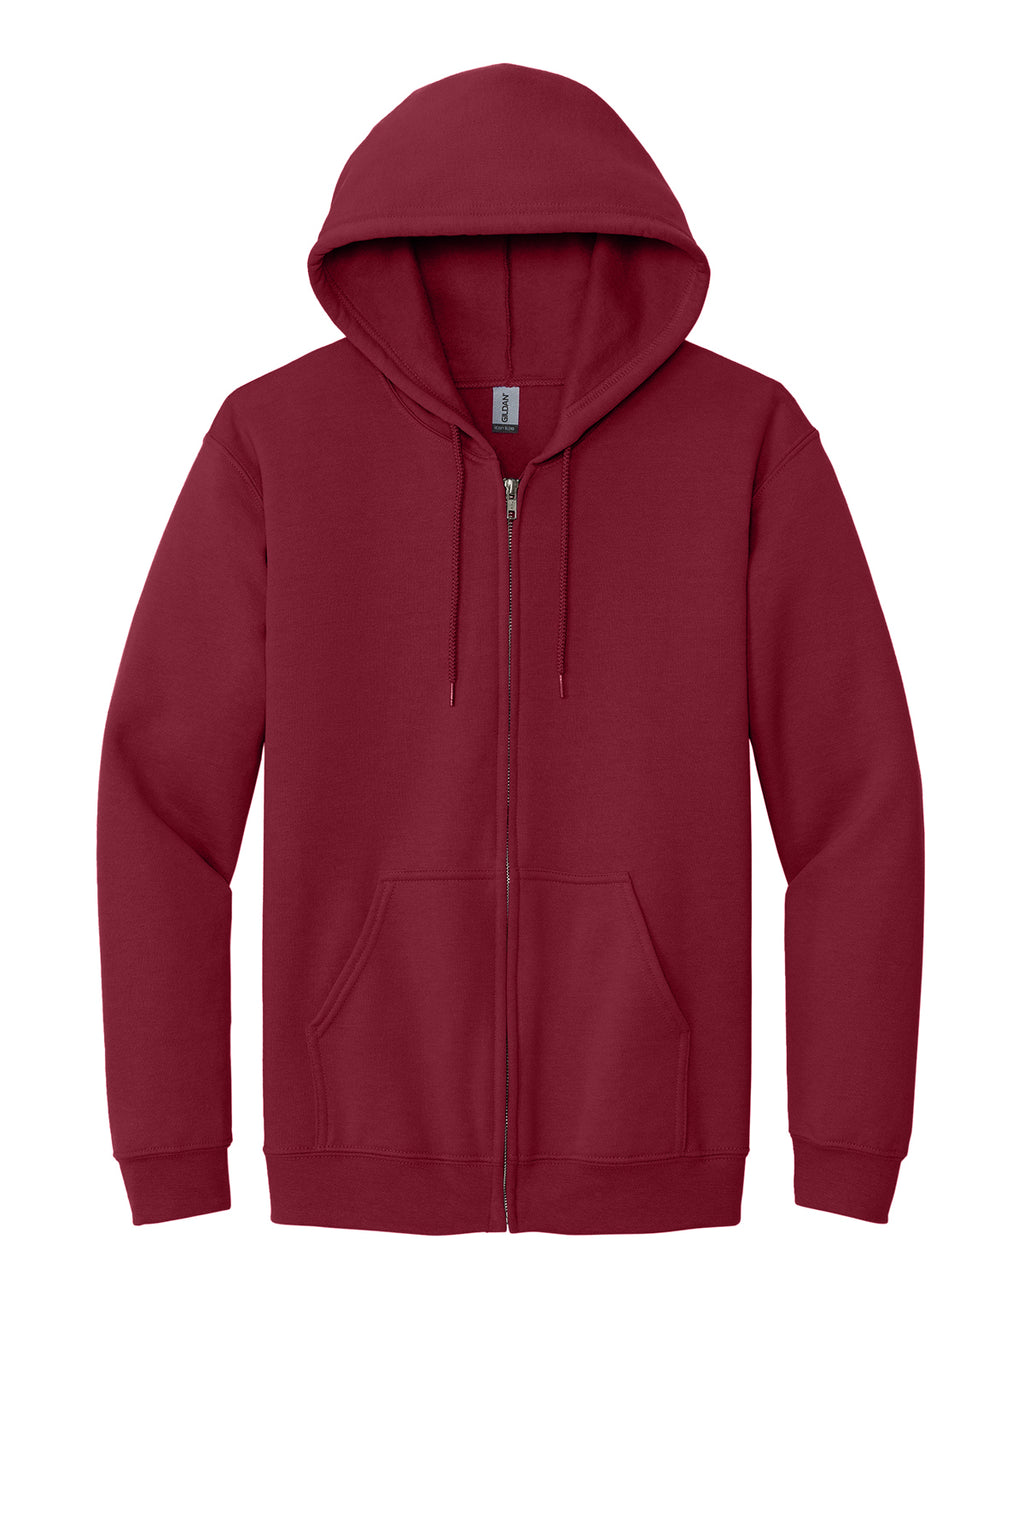 Gildan Full-Zip Hooded Sweatshirt Mens/Unisex Hoodies Cardinal